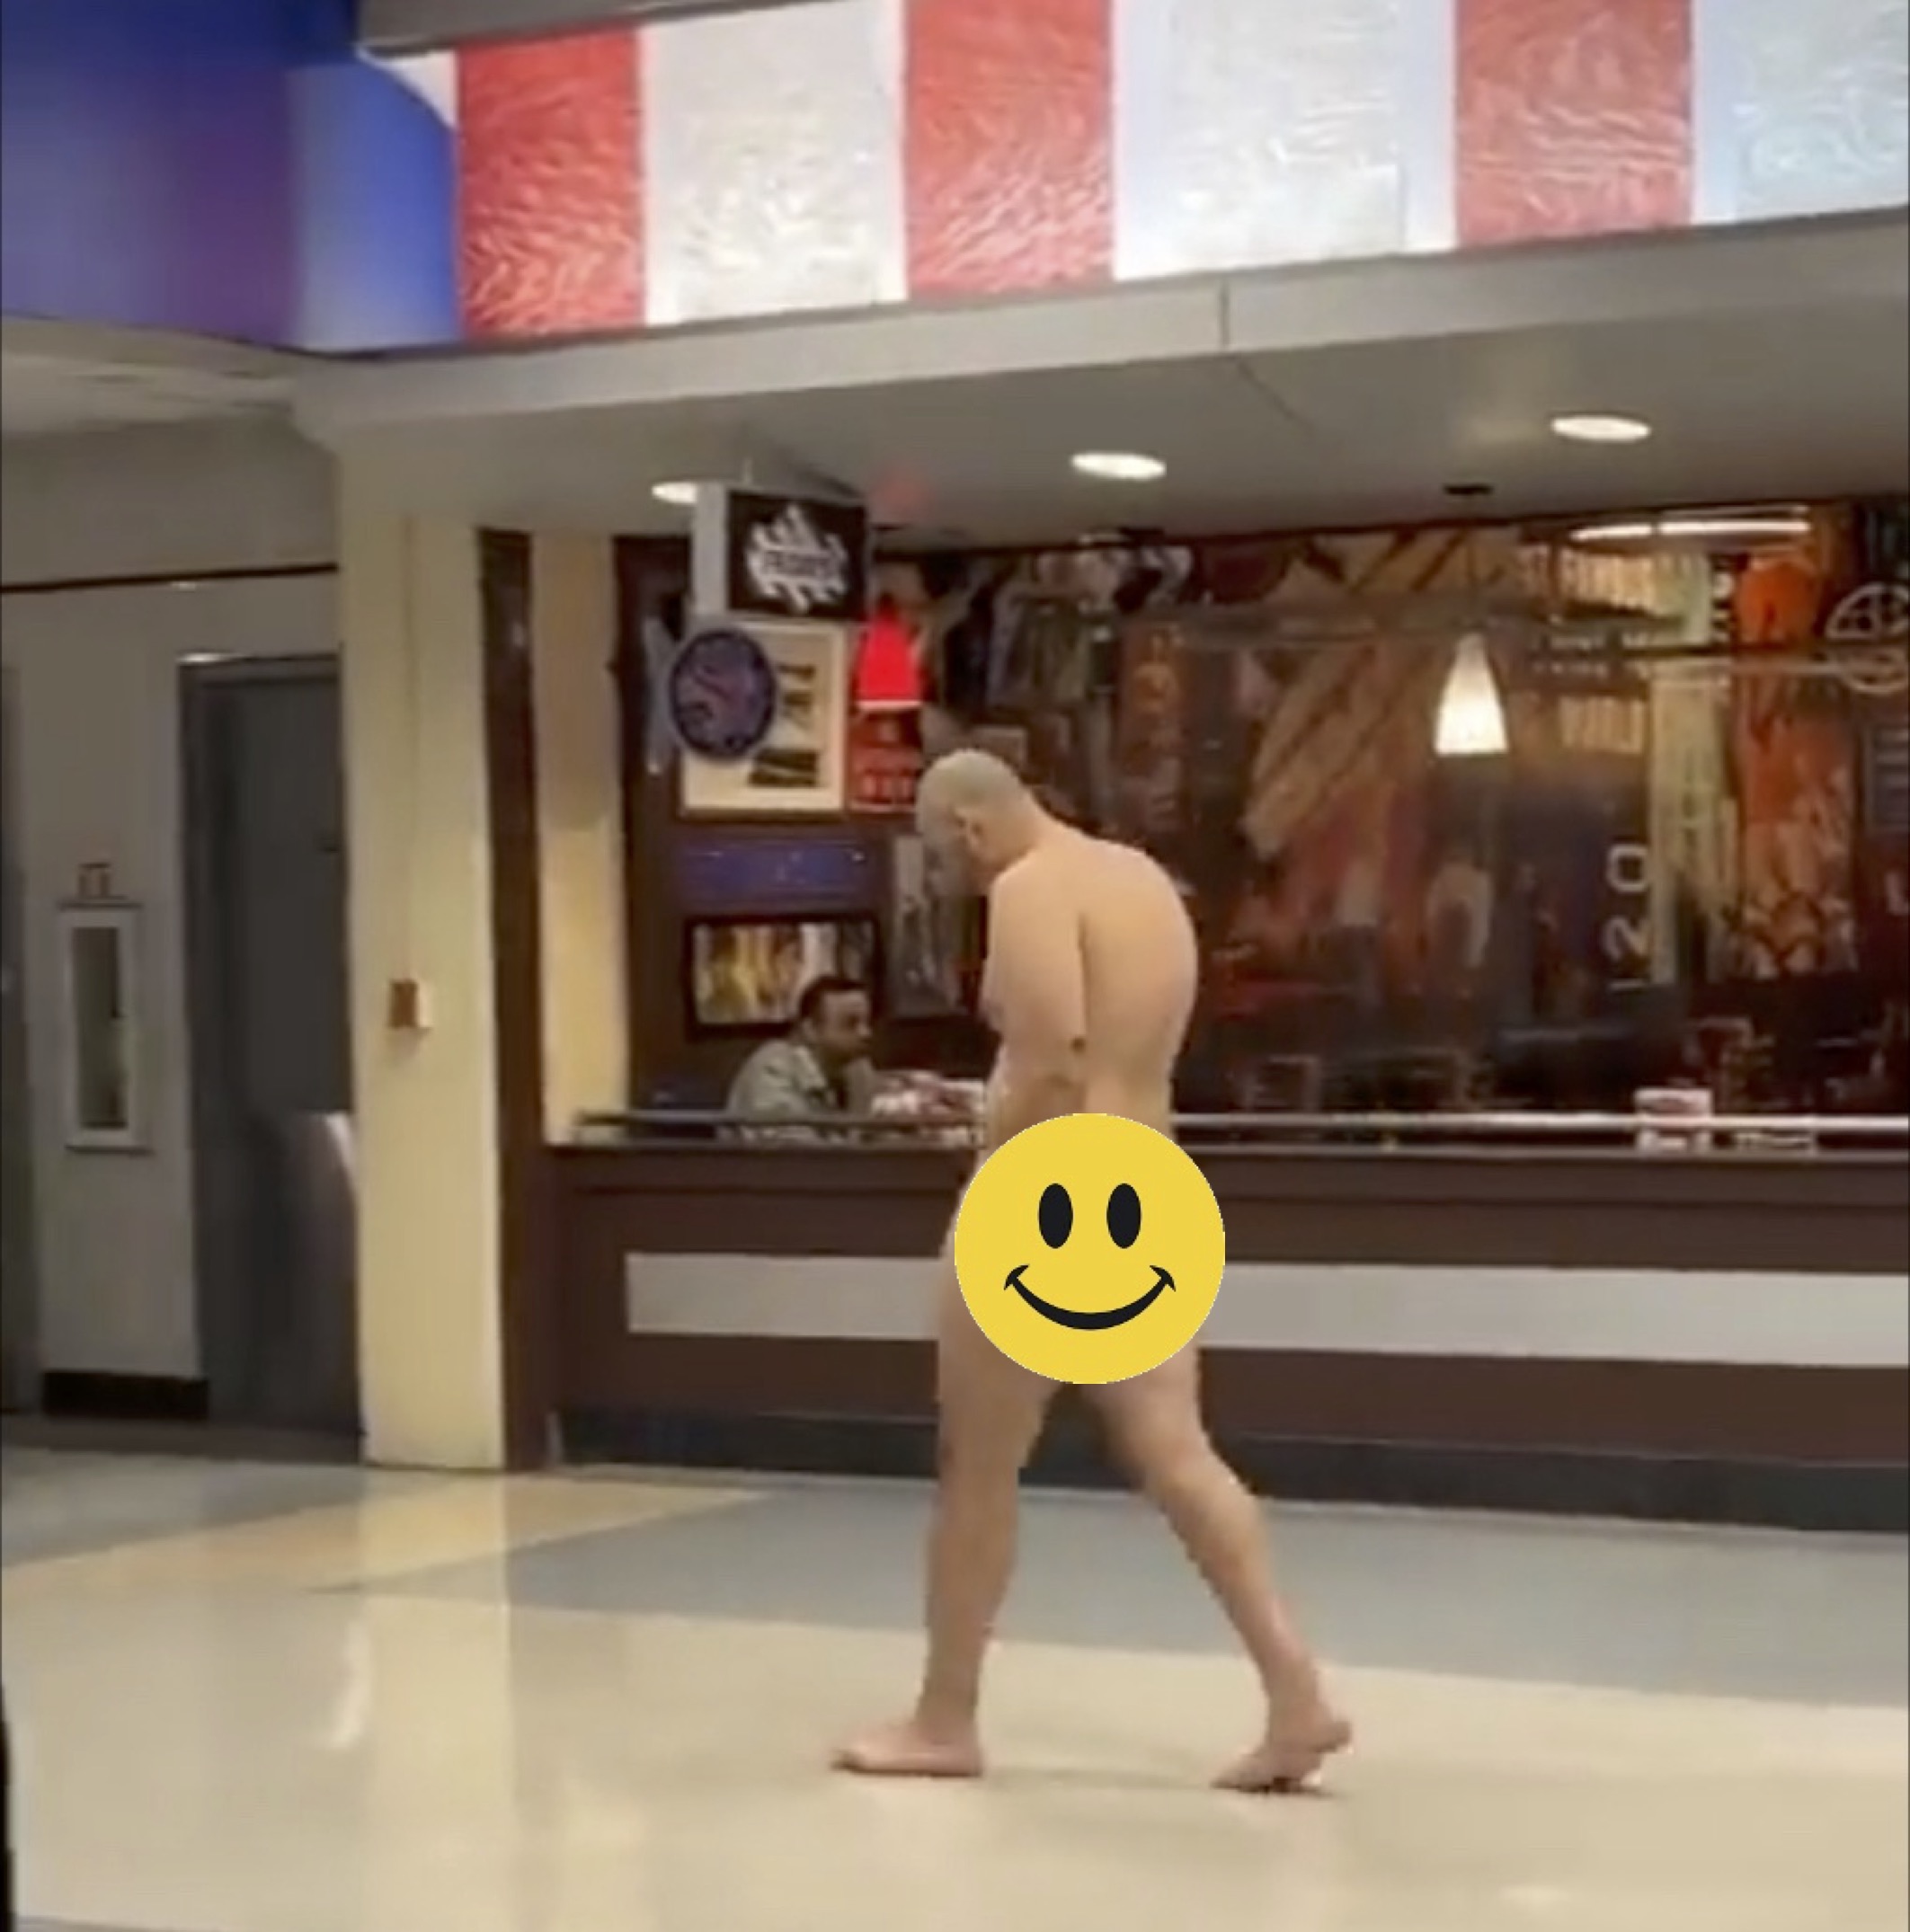 Bare Man Casually Walks Via Dallas Airport – The Bulkhead Seat | Digital Noch